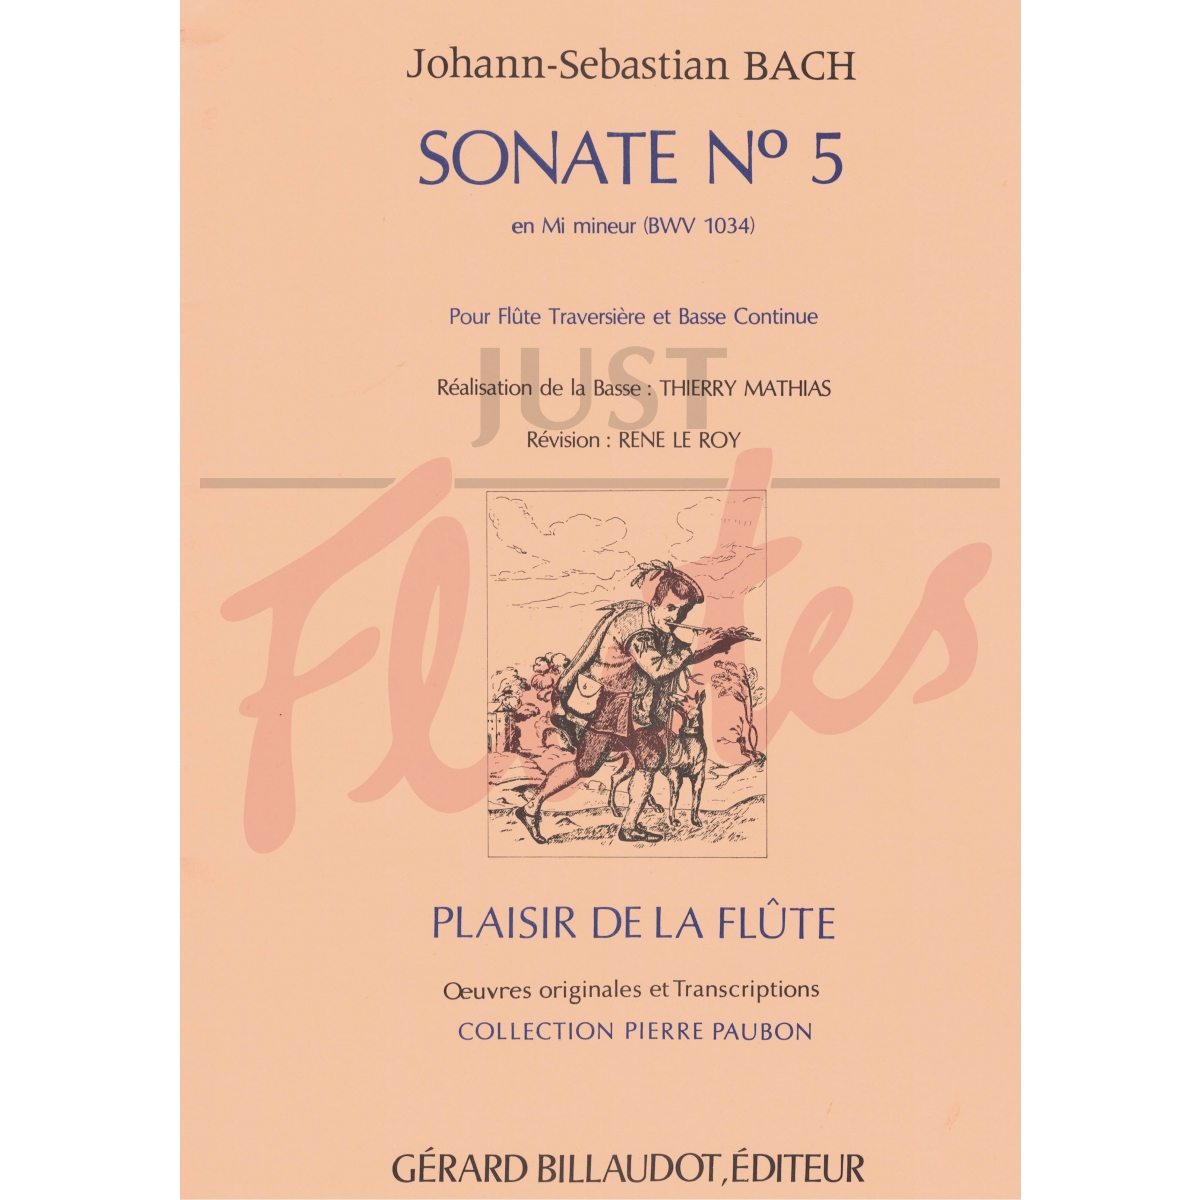 Sonata in E minor for Flute and Continuo